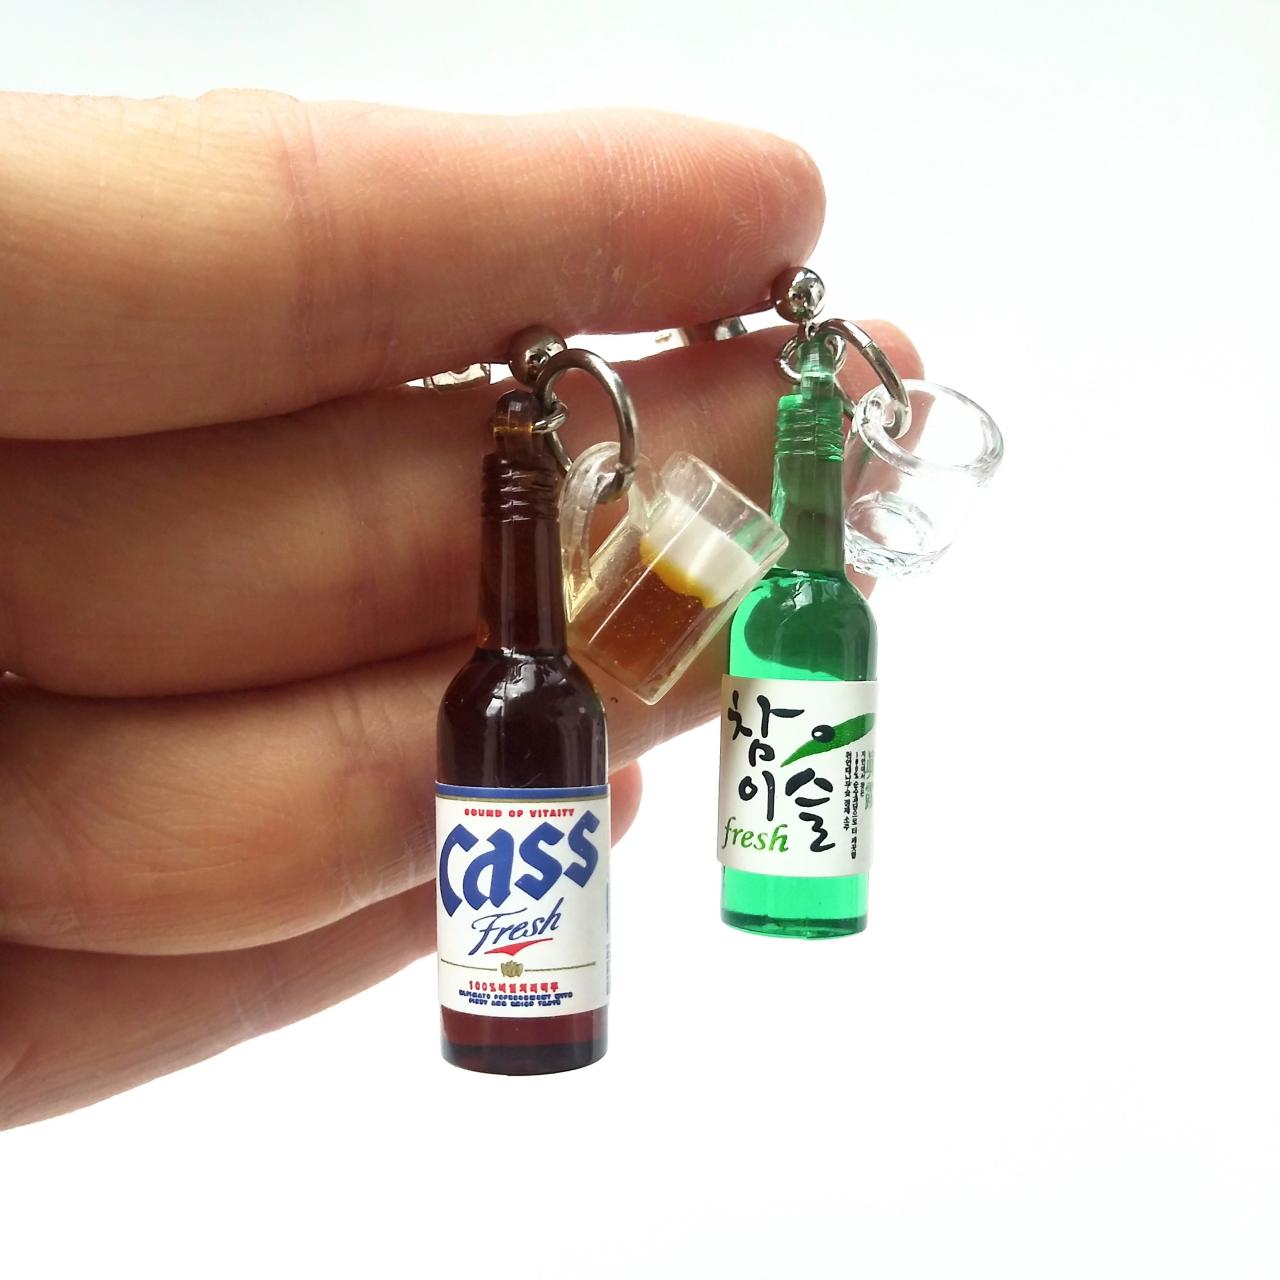 Korean Soju Bottle And Korean Beer Brand 'cass' Bottle Earrings// Korean Drink Bottle Earrings// Sliver 925 Earrings